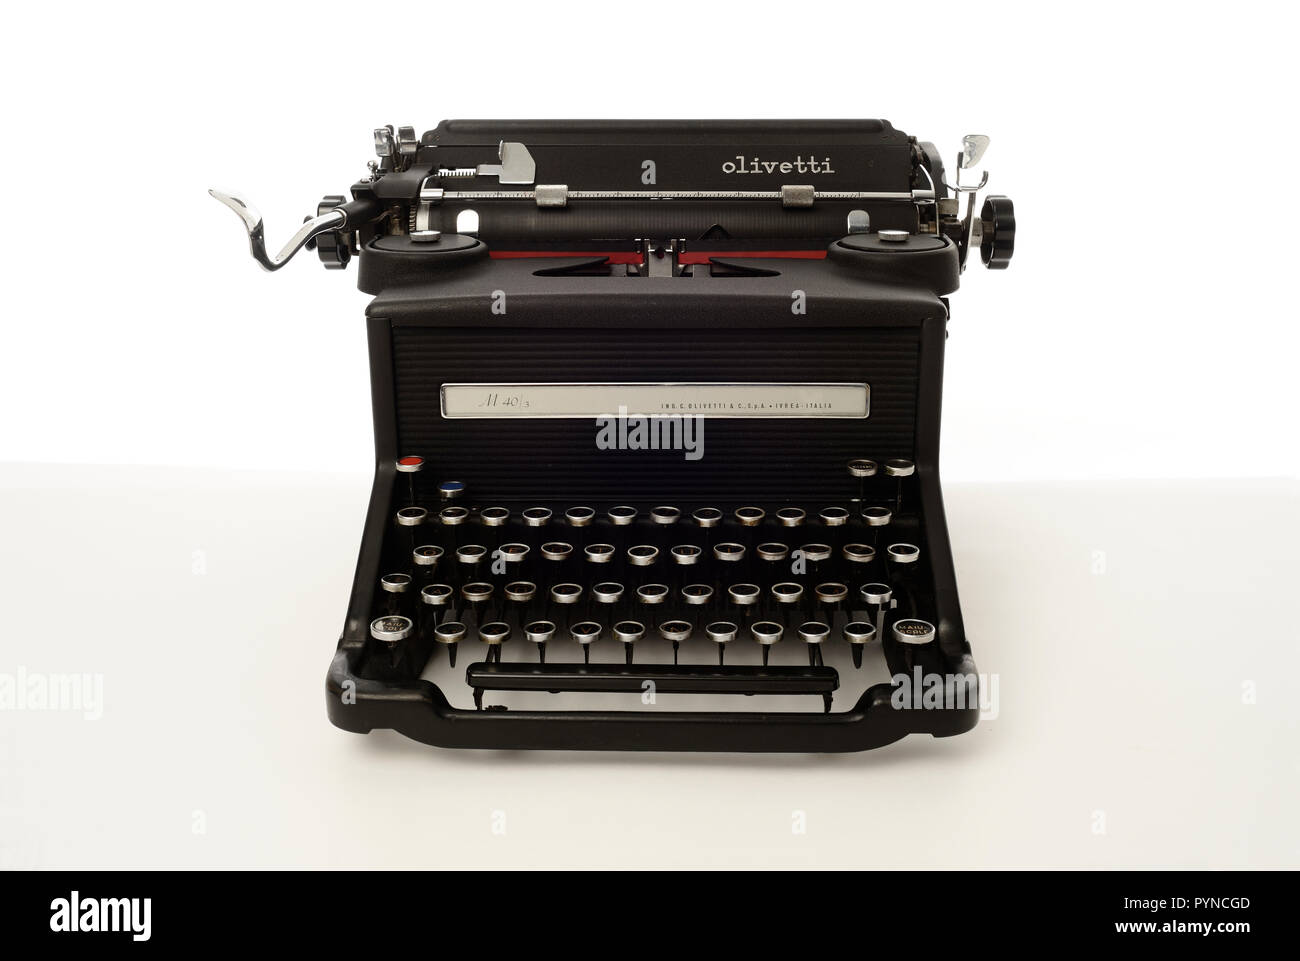 Máquina de escribir antigua 1930 Olivetti M40/3 fondo blanco/gris,macchina da scrivere antica anni 30 Foto de stock